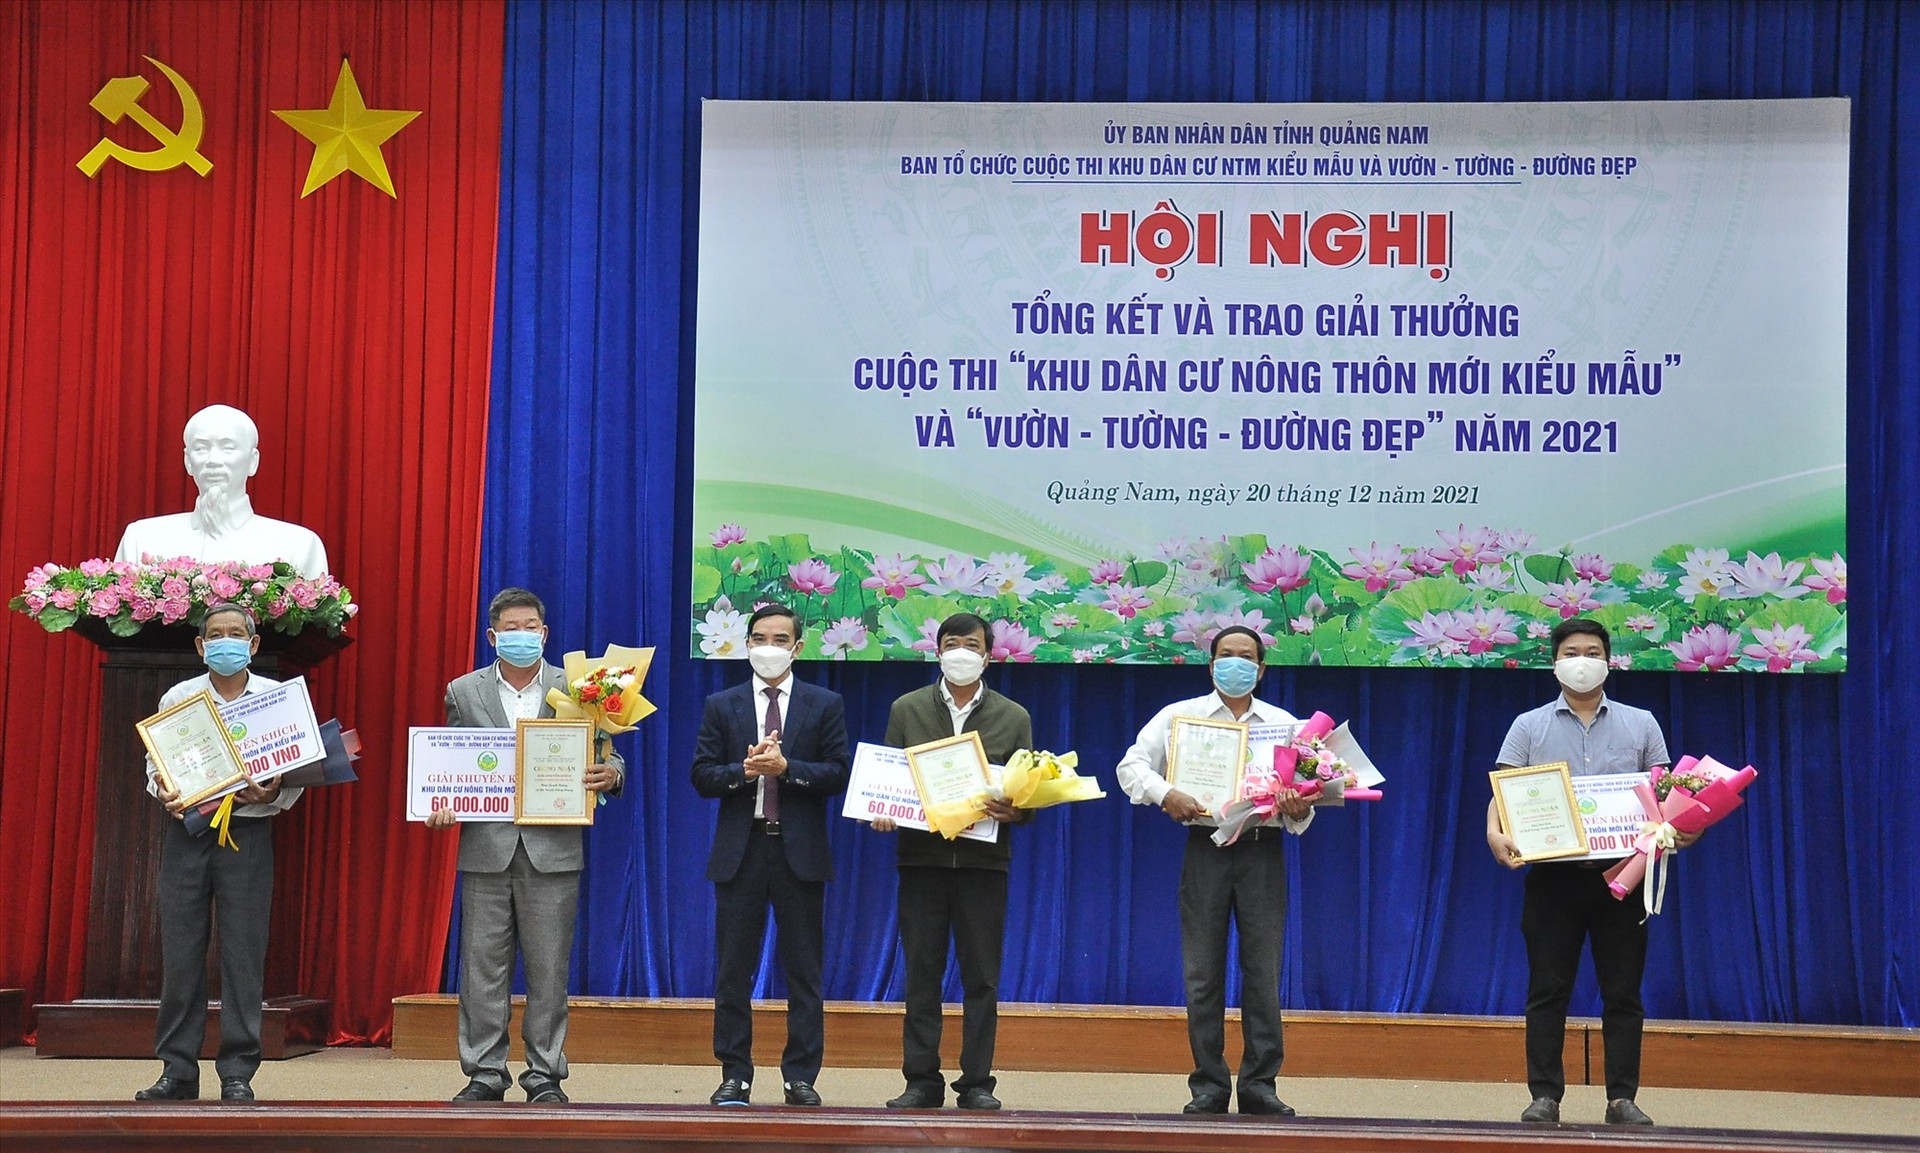 Ông Trần Văn Noa - Chi cục trưởng Chi cục Phát triển nông thôn trao giải Khuyến khích cho phần thi Khu dân cư NTM kiểu mẫu.   Ảnh: N.Đ